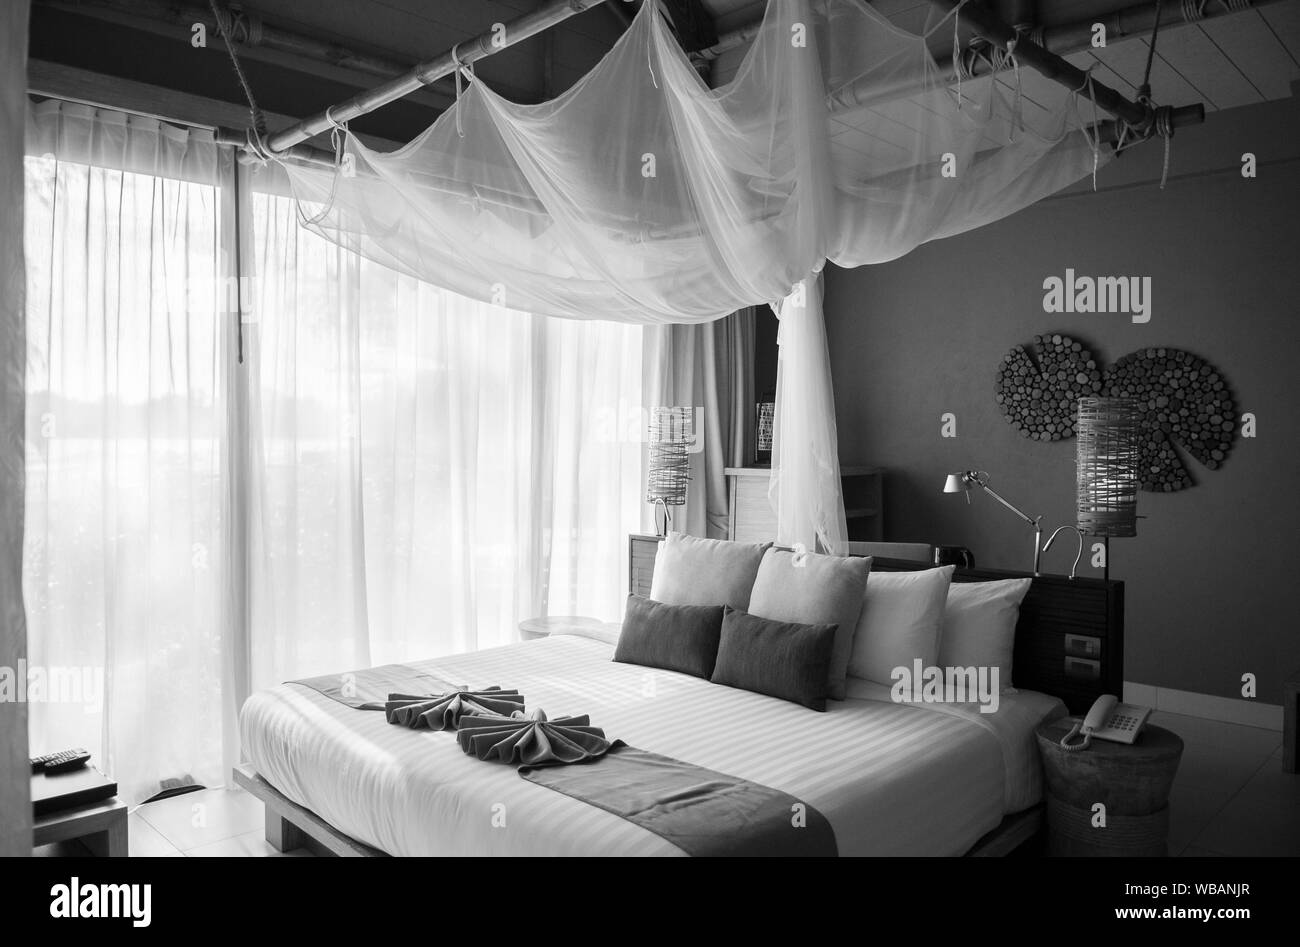 21 mai 2014, Krabi, Thaïlande - Asian Thai tropical Luxury Resort chambre avec lit en bois et rideau blanc. Haut plafond chambre d'hôtel de l'intérieur. Black et w Banque D'Images